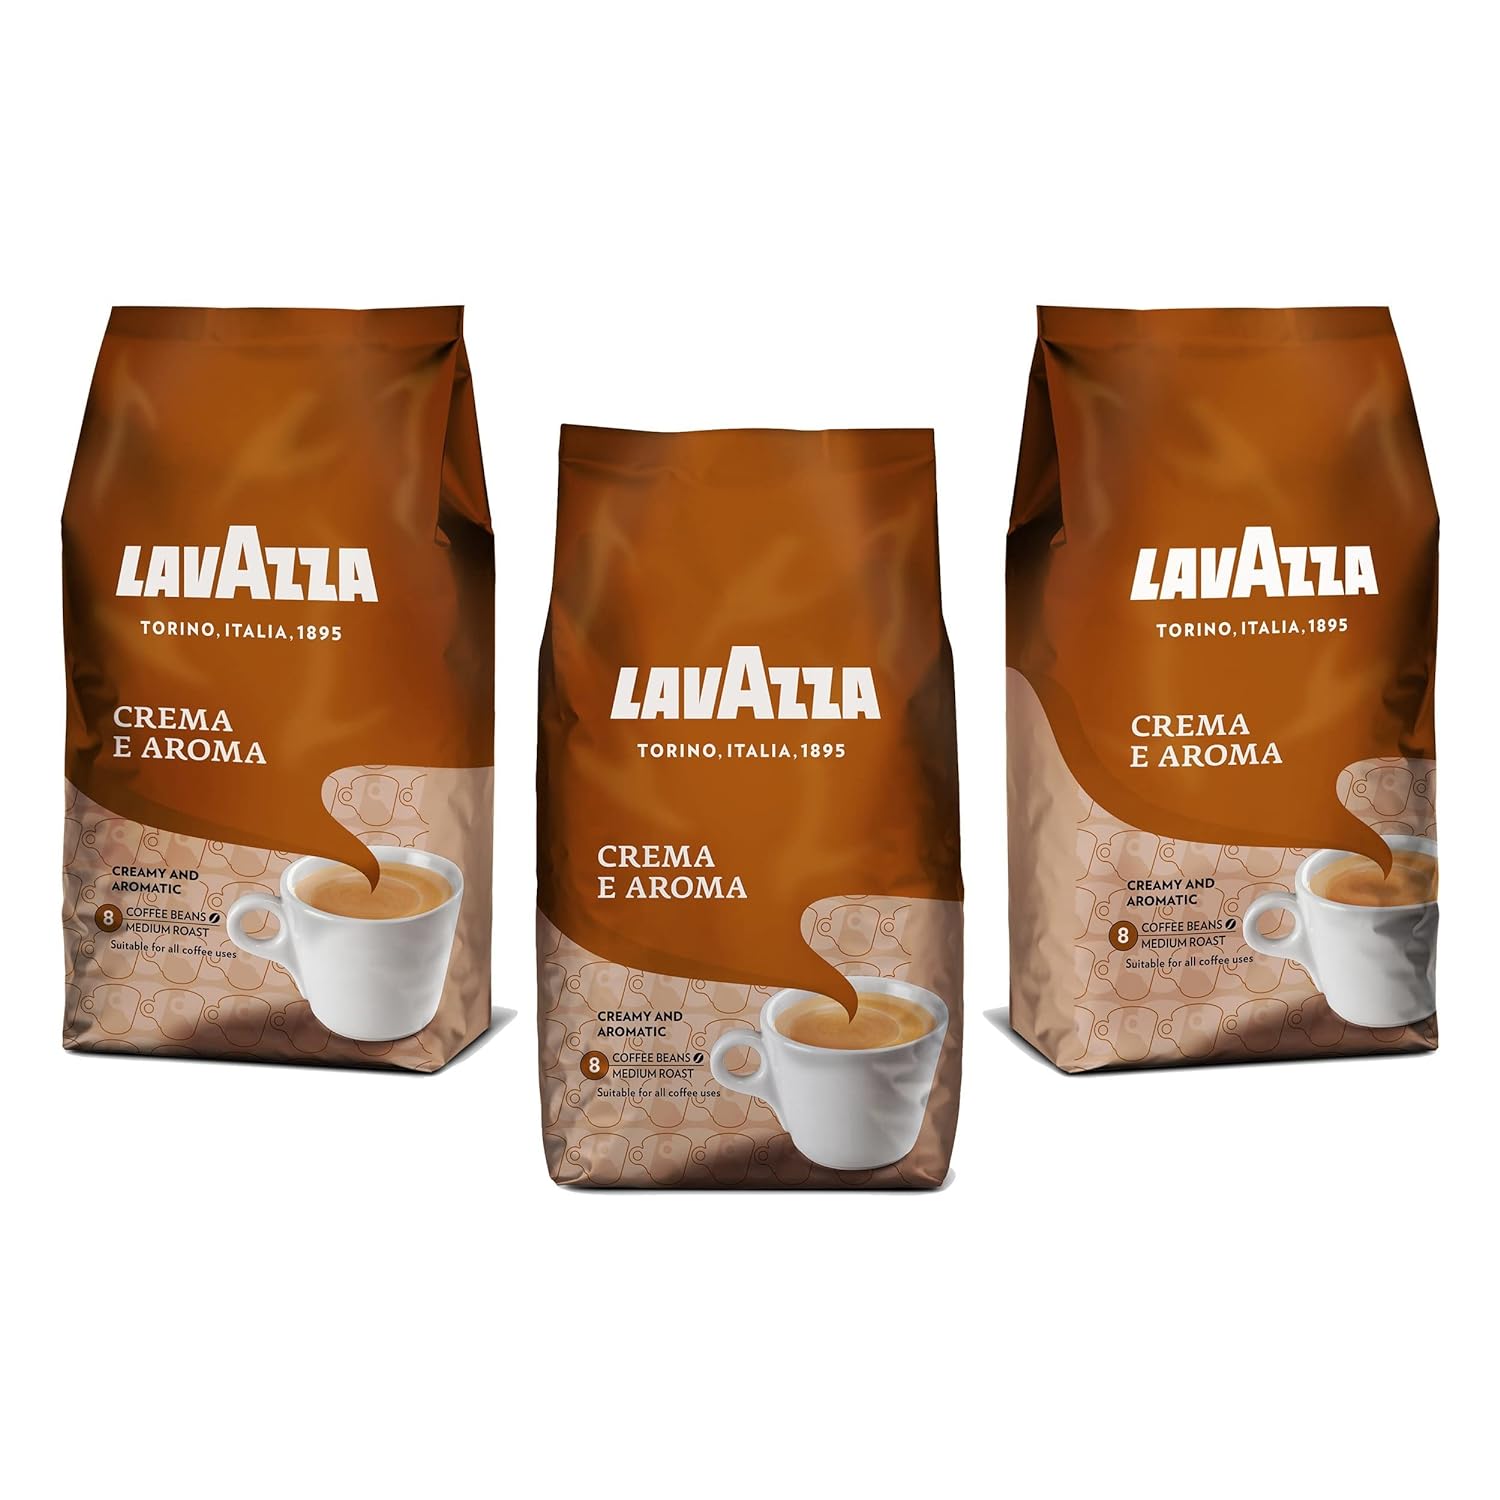 Lavazza coffee beans crema e aroma, bean coffee, 3 -pack, 3 x 1000g